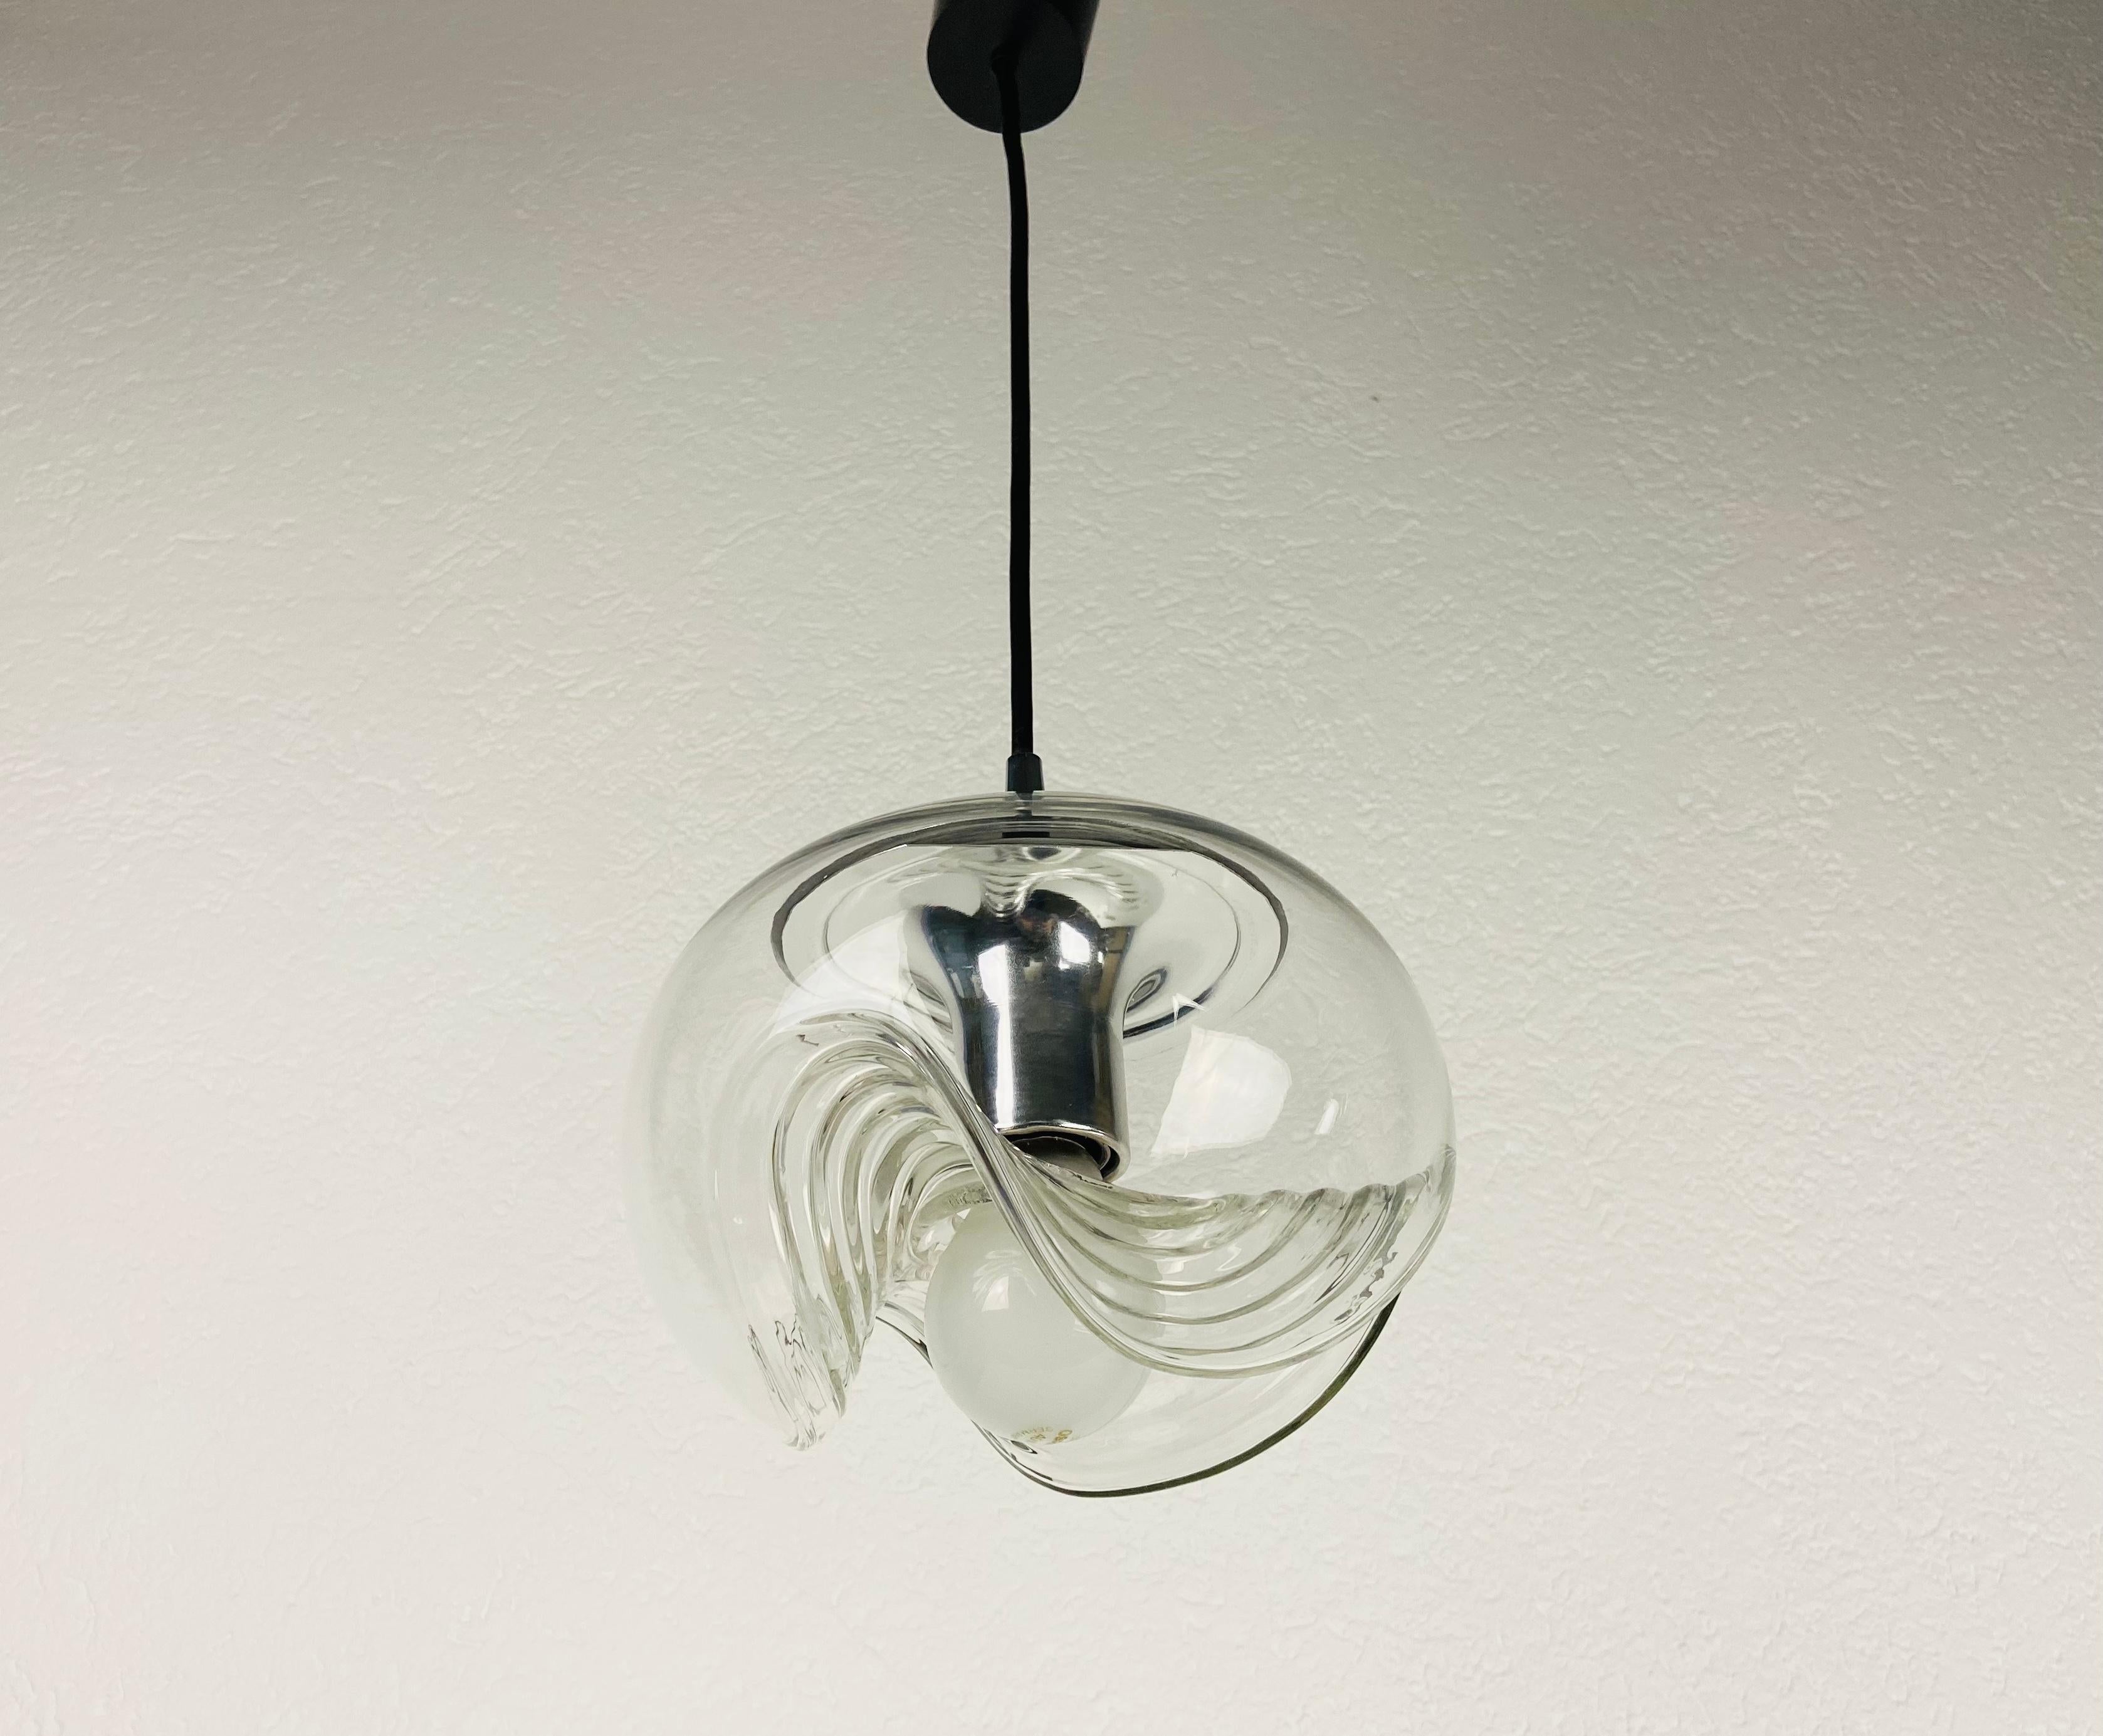 Lampe suspendue ronde de Koch & Lowy pour Peill et Putzler, fabriquée en Allemagne dans les années 1960. Il est fascinant avec son beau verre transparent. La lampe a un design de l'ère spatiale.

La lampe nécessite une ampoule E27. Très bon état